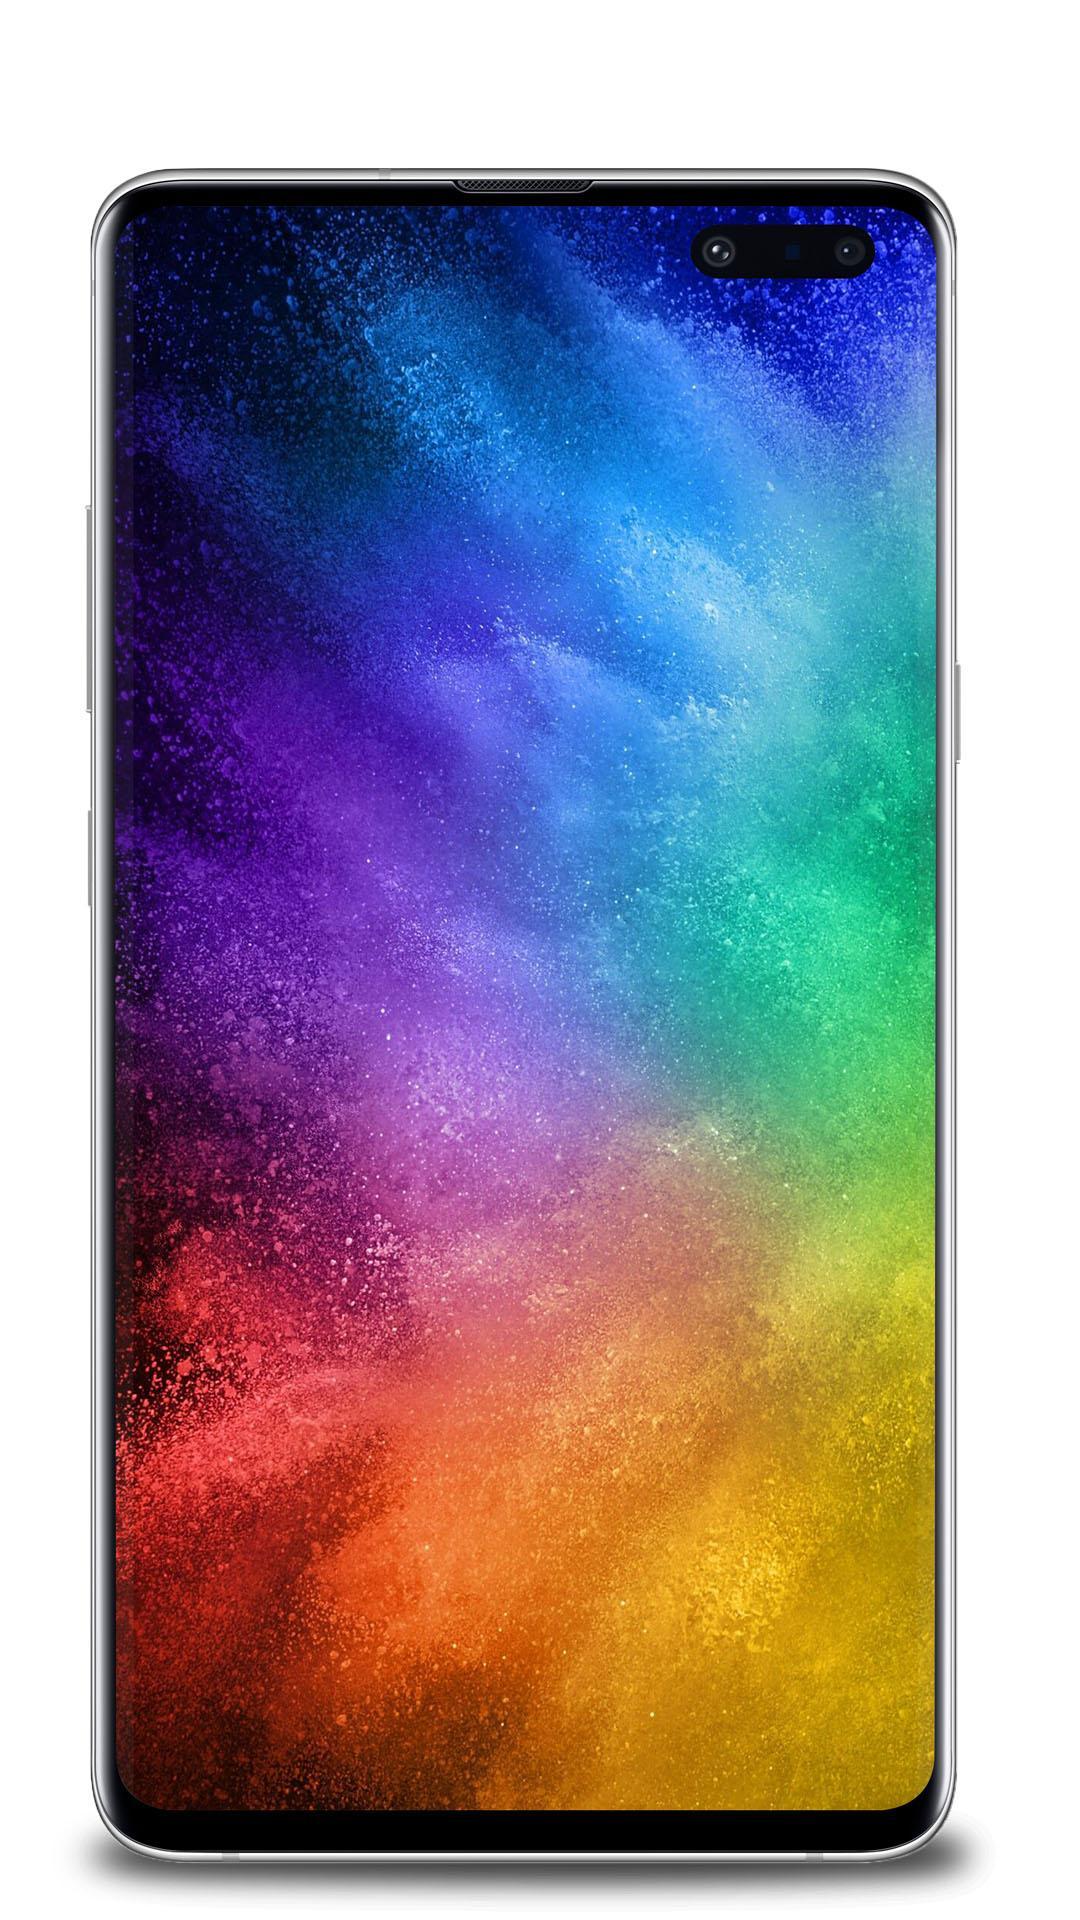 Android 用の 虹の壁紙 Apk をダウンロード